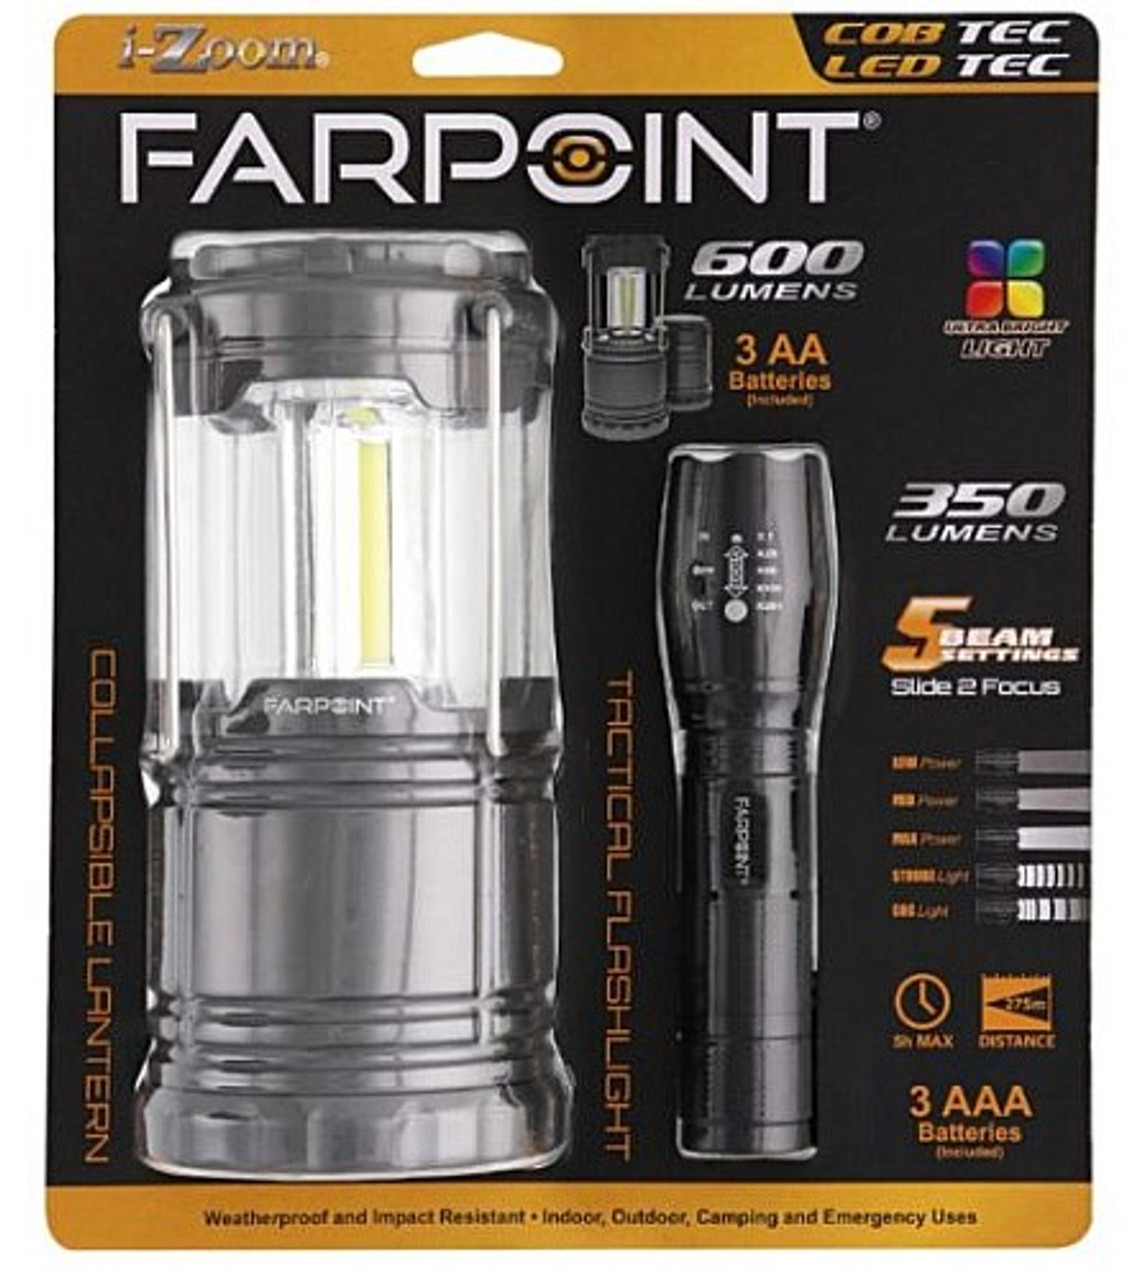 Customized LED Scope Lantern Flashlights